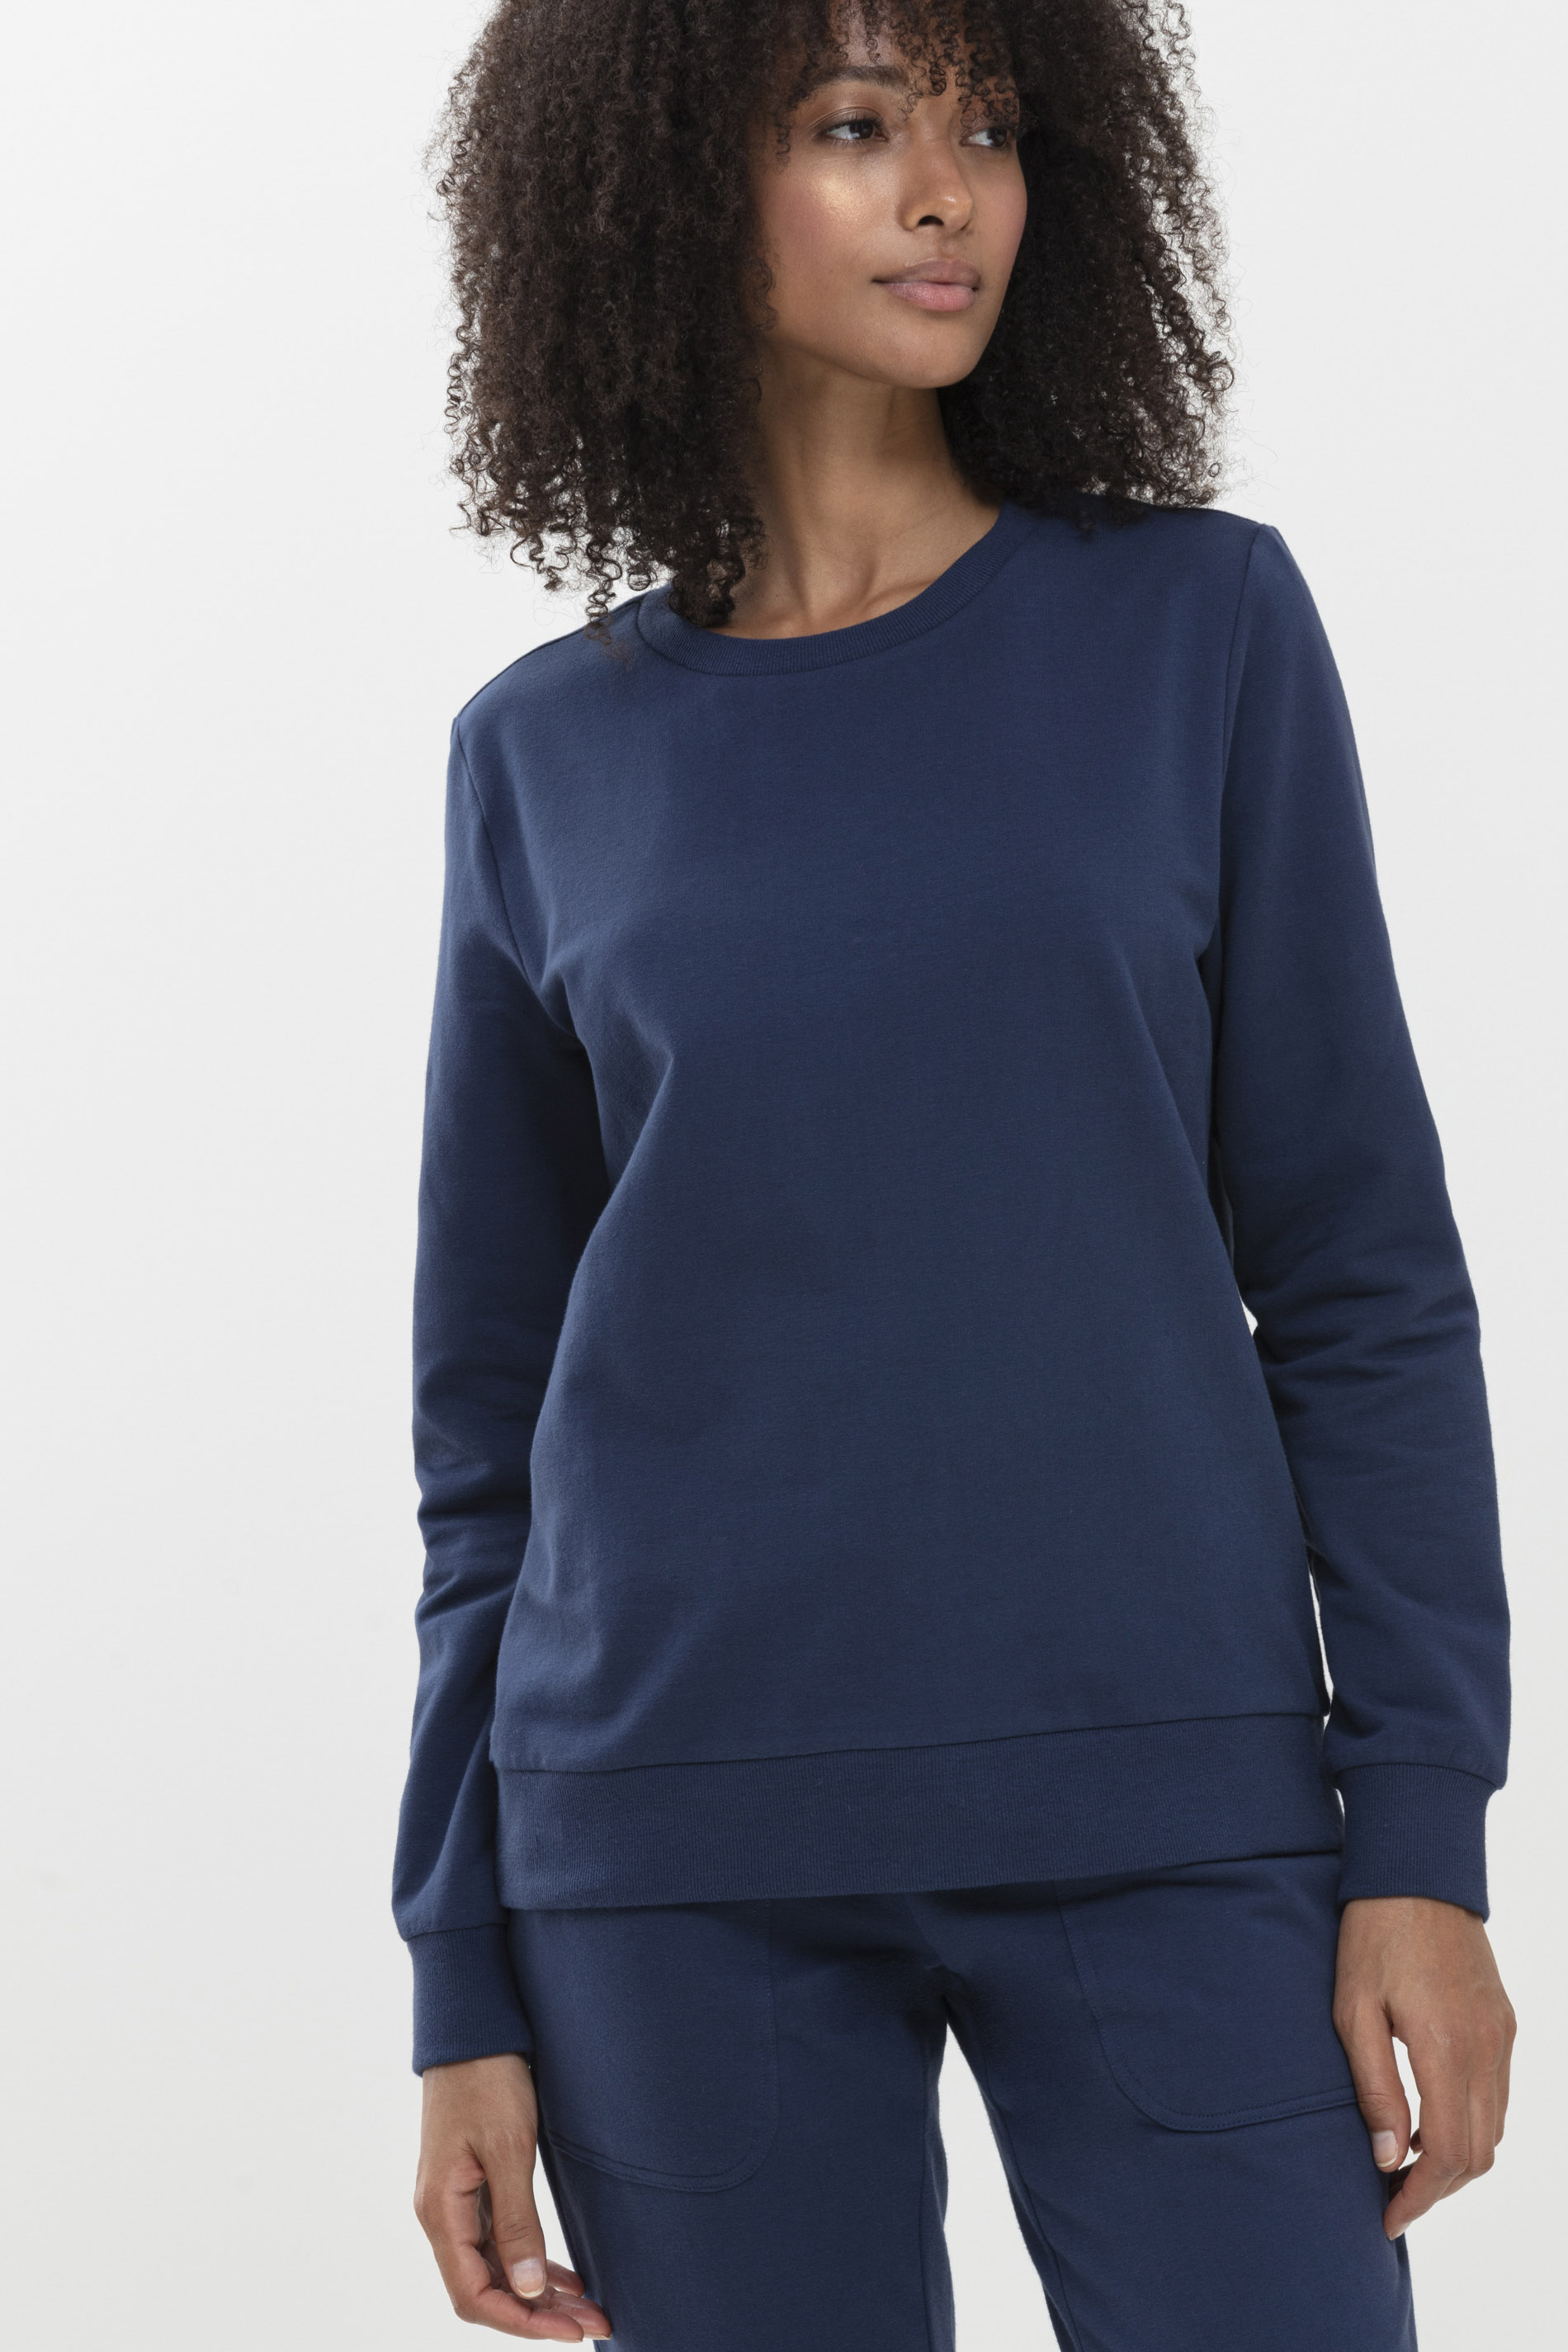 Sweater New Blue Serie Mia Festlegen | mey®